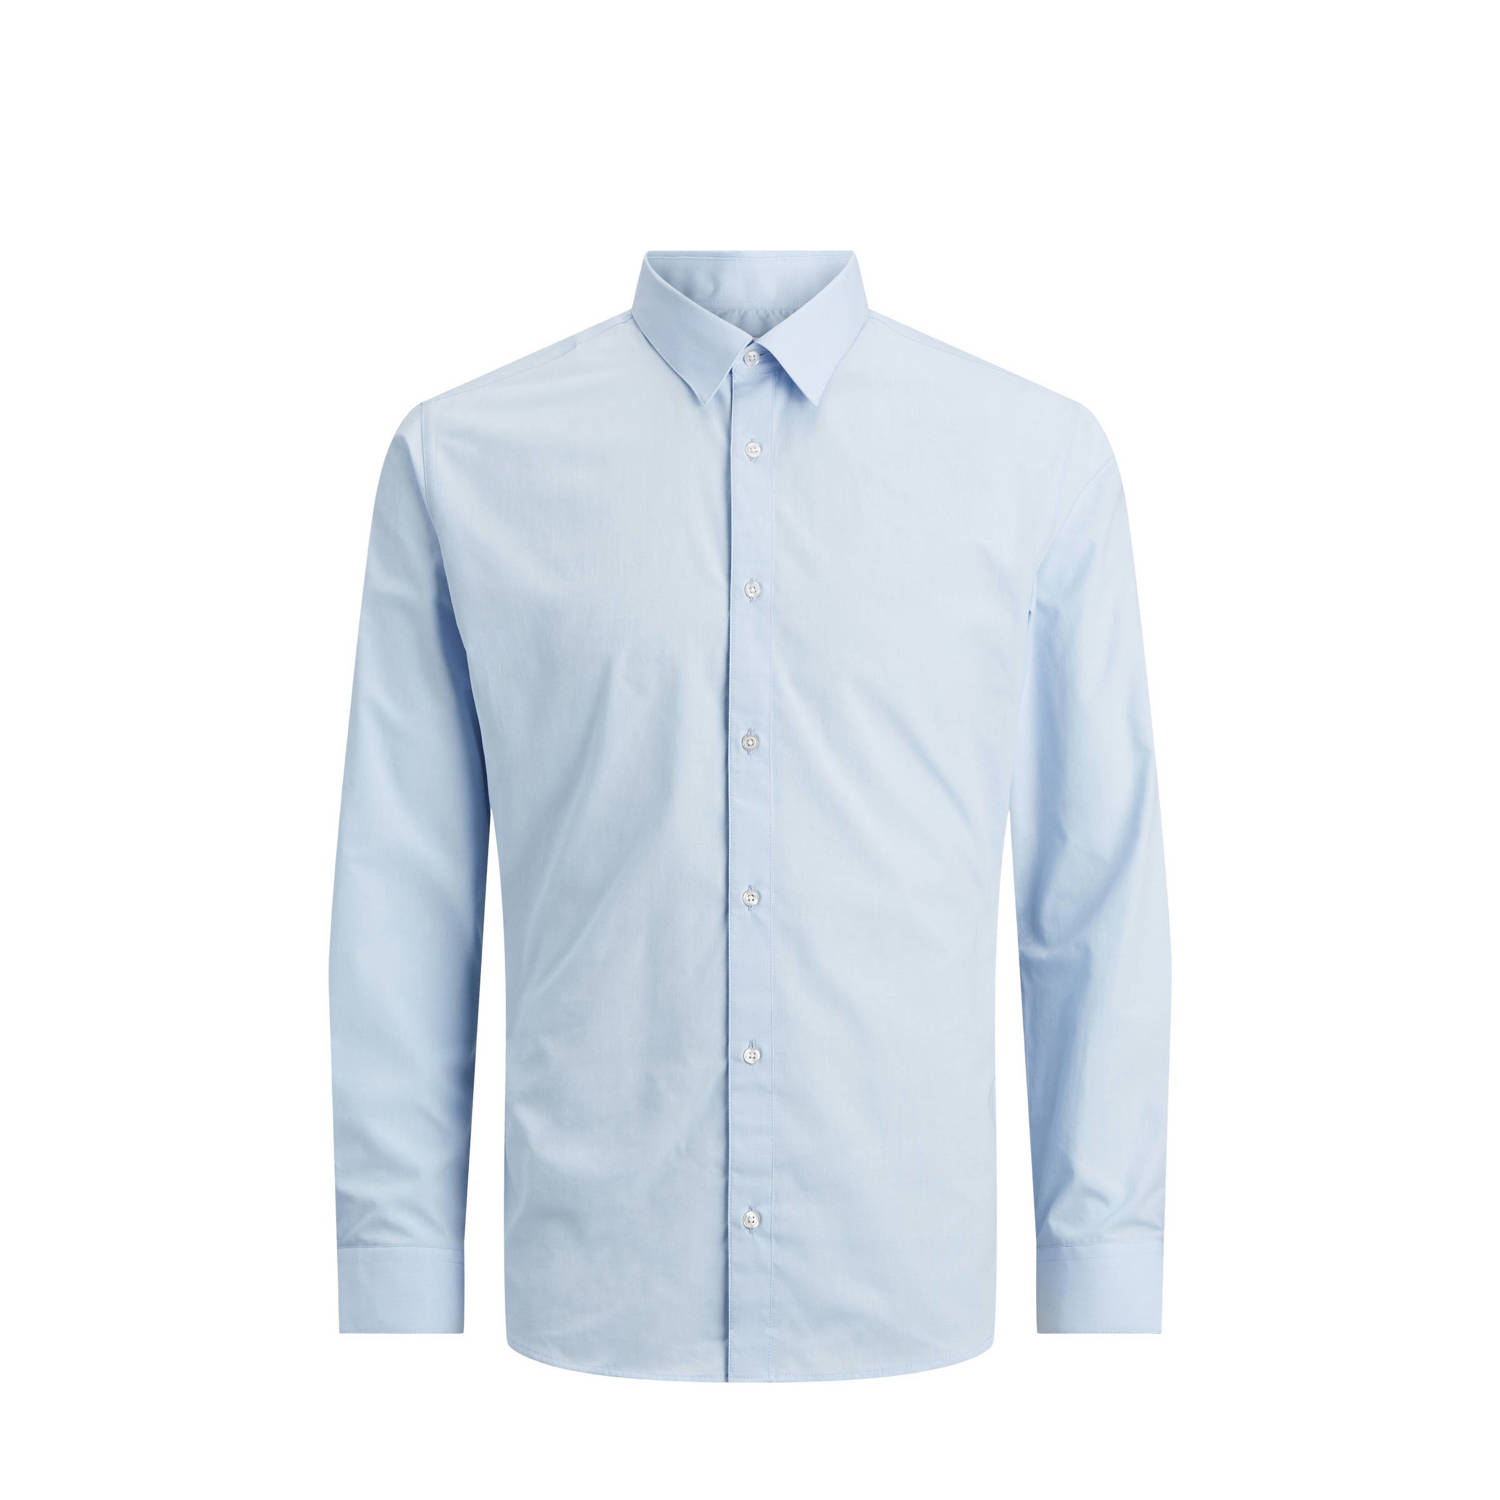 Jack & jones JUNIOR overhemd lichtblauw Jongens Polyester Klassieke kraag 116